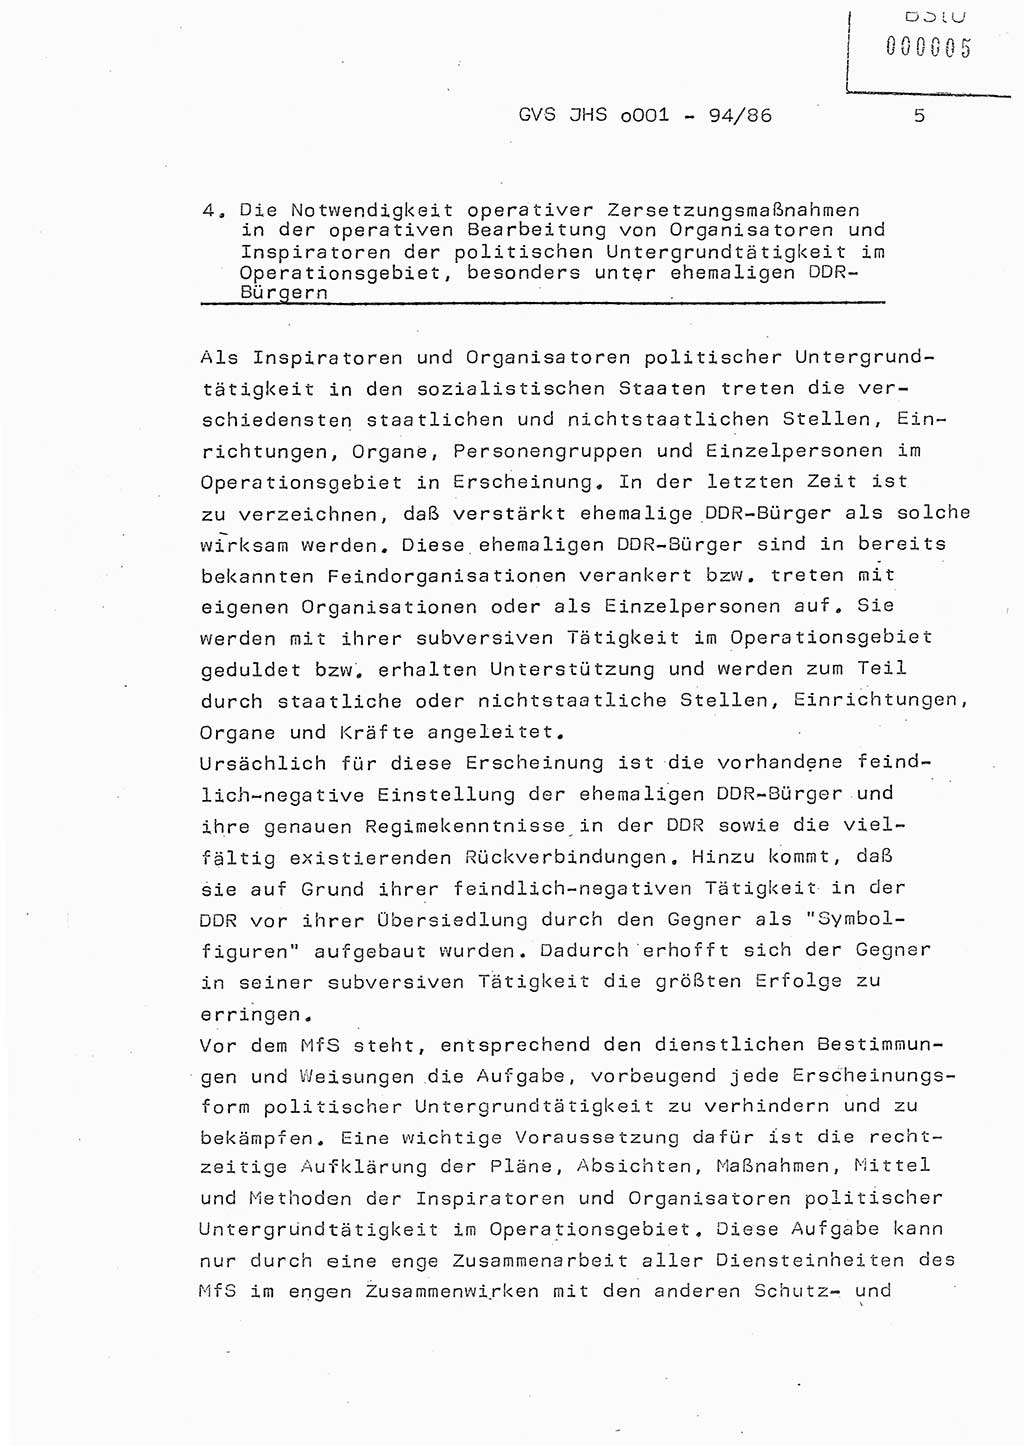 Diplomarbeit Oberleutnant Volkmar Pechmann (HA ⅩⅩ/5), Ministerium für Staatssicherheit (MfS) [Deutsche Demokratische Republik (DDR)], Juristische Hochschule (JHS), Geheime Verschlußsache (GVS) o001-94/86, Potsdam 1986, Blatt 5 (Dipl.-Arb. MfS DDR JHS GVS o001-94/86 1986, Bl. 5)